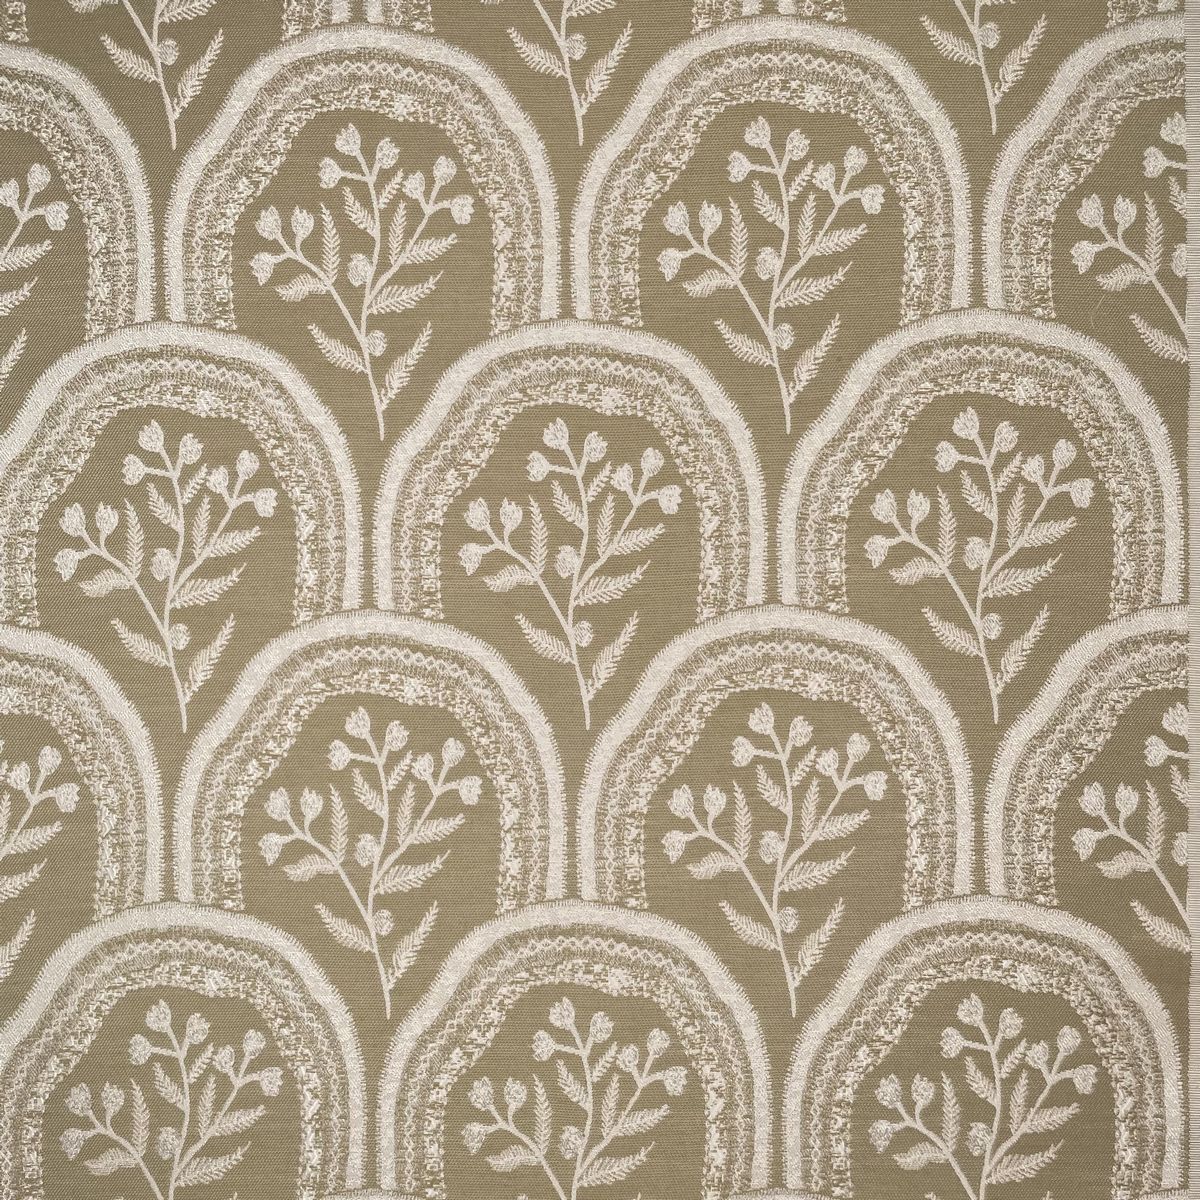 Hollybush Flax Fabric by Chatham Glyn